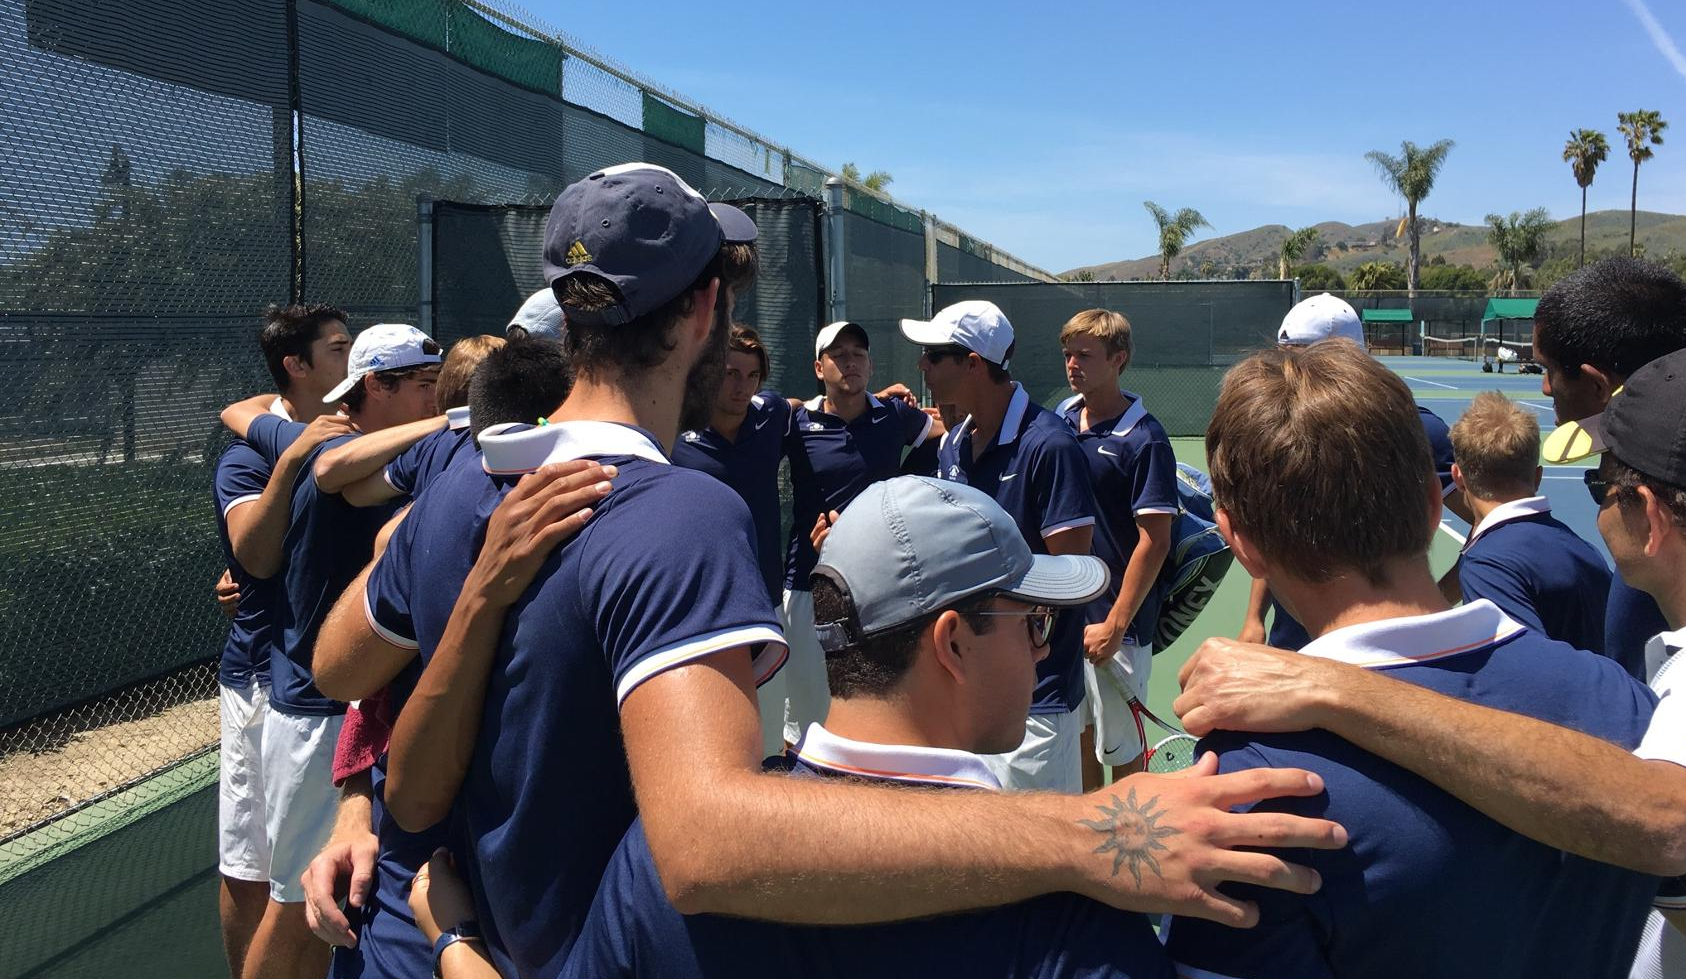 Men's tennis team ranked No. 1 in So. Cal. going into 2017 season